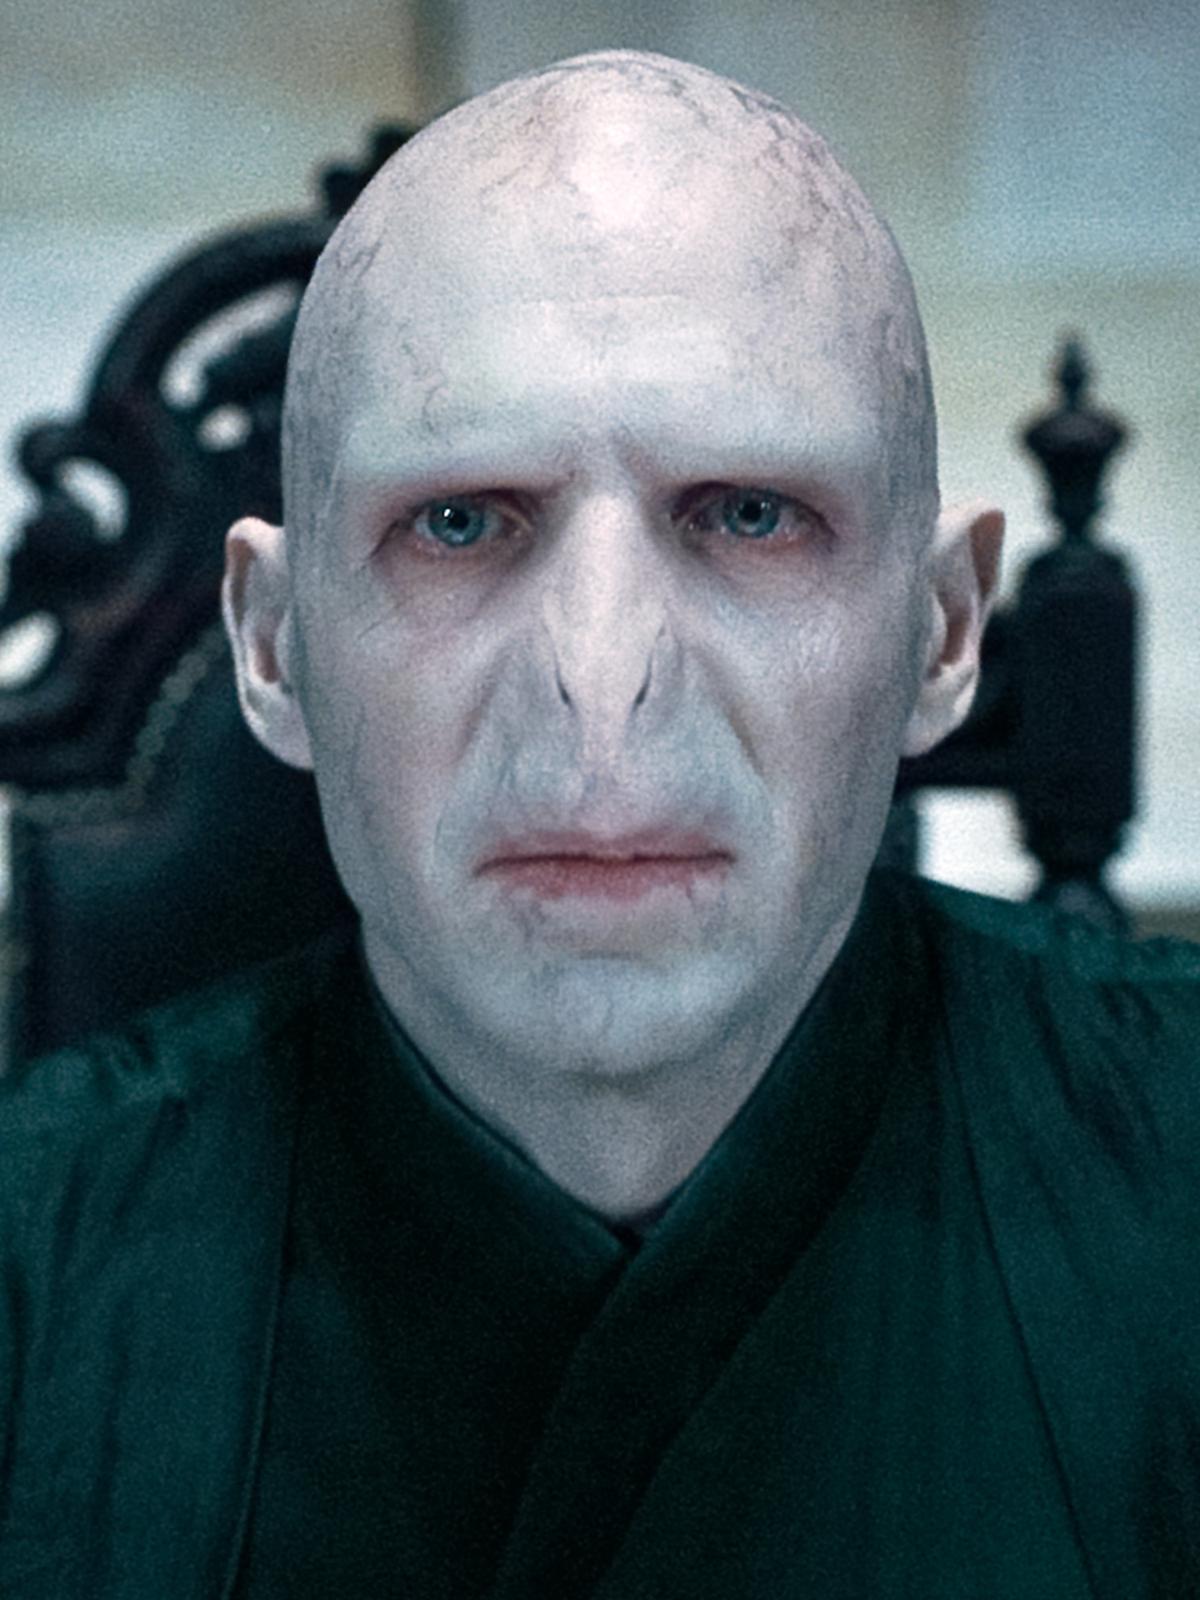 Ngoại truyện Harry Potter ấn định ngày ra mắt chính thức, cộng đồng mạng nhanh tay sắp được ngắm Chúa tể Voldemort phiên bản có mũi rồi - Ảnh 6.